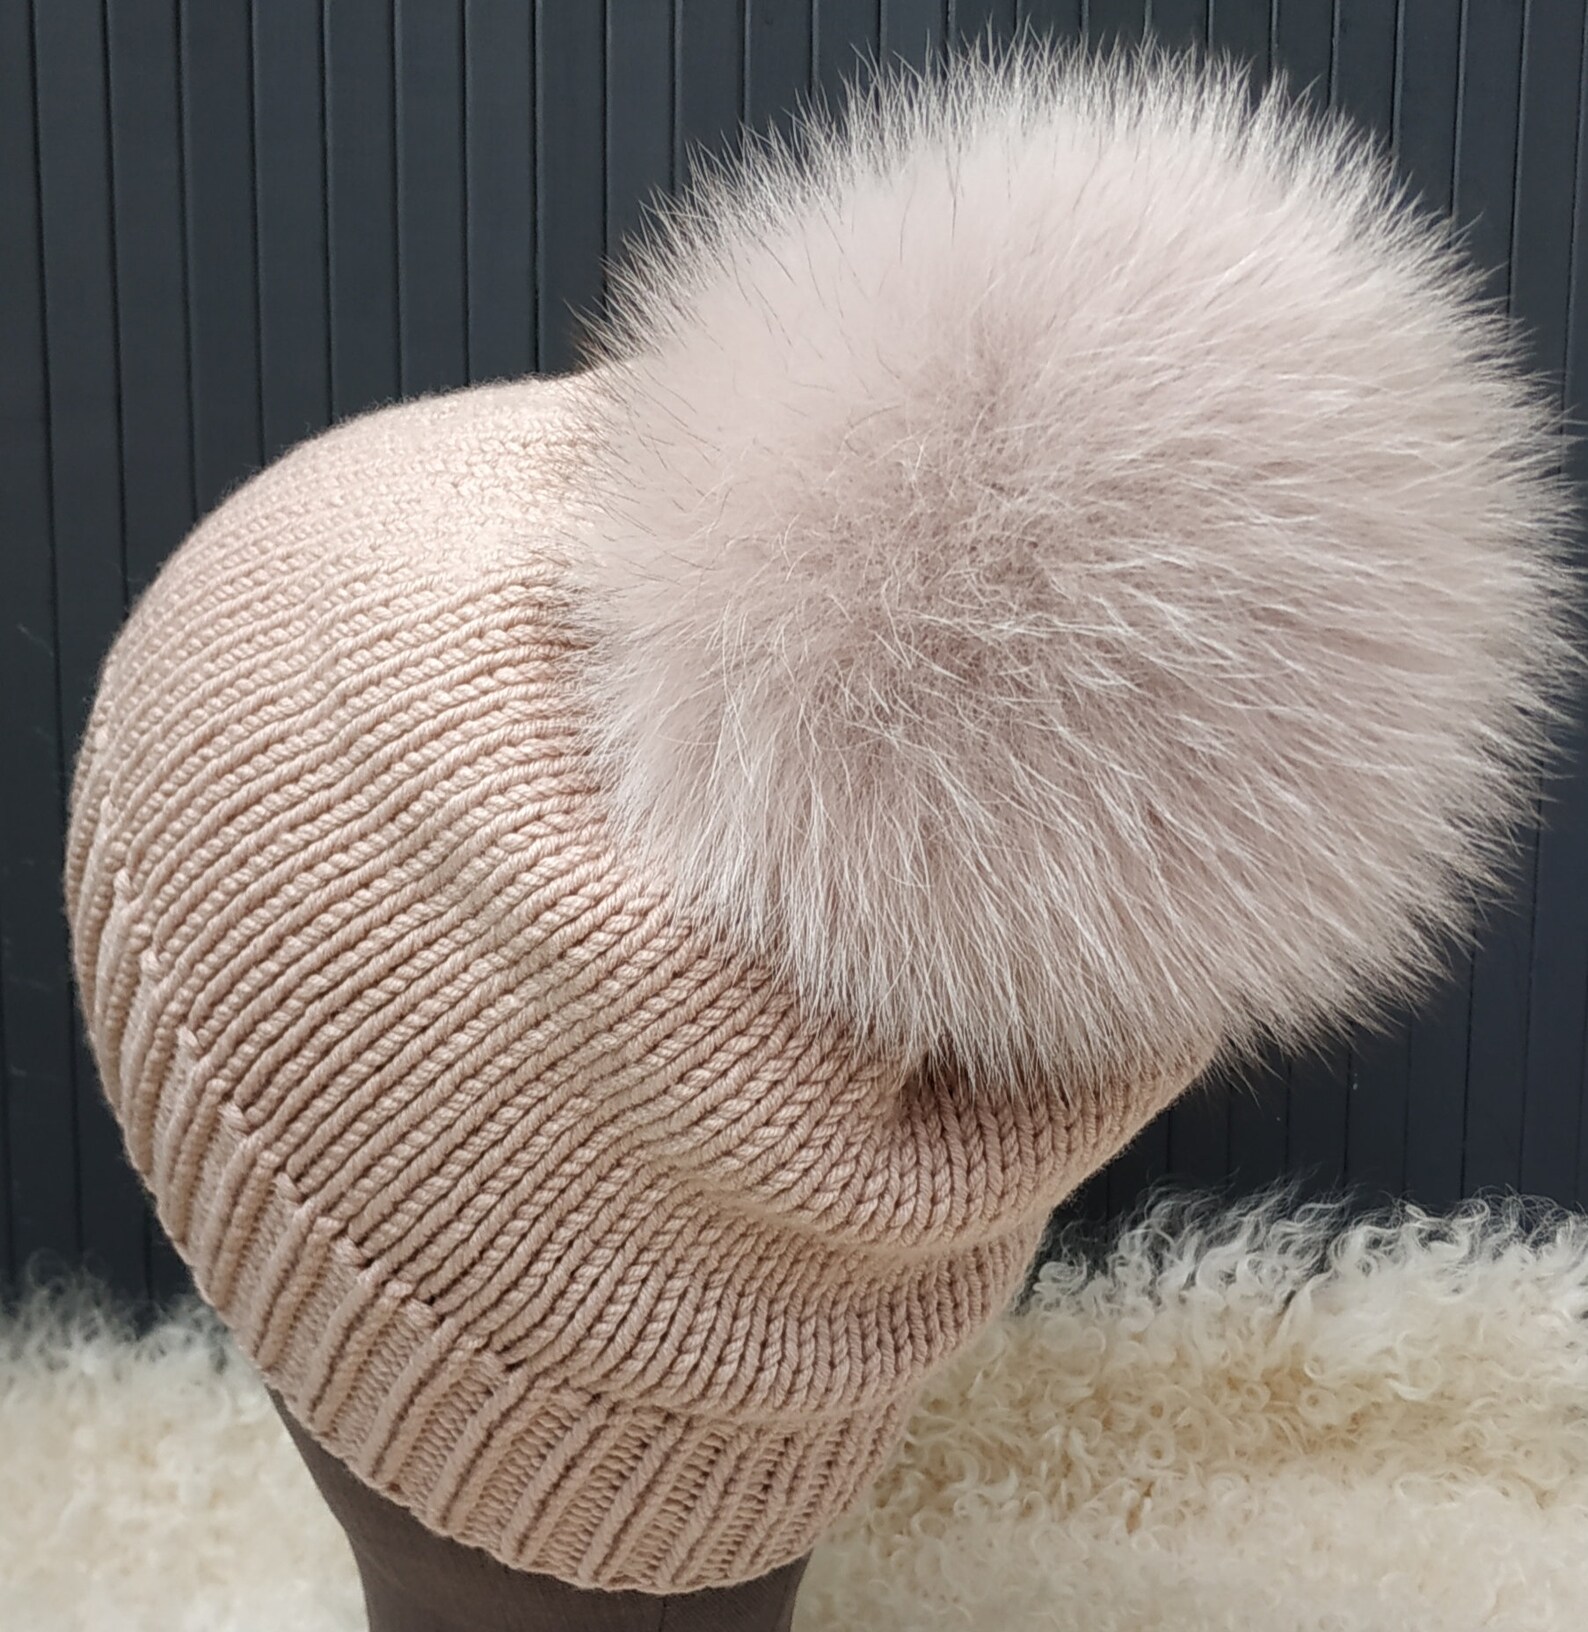 Pompom Beanie Knit Hat Fox Fur Pom pom Beanie Wool Knitted Hat | Etsy